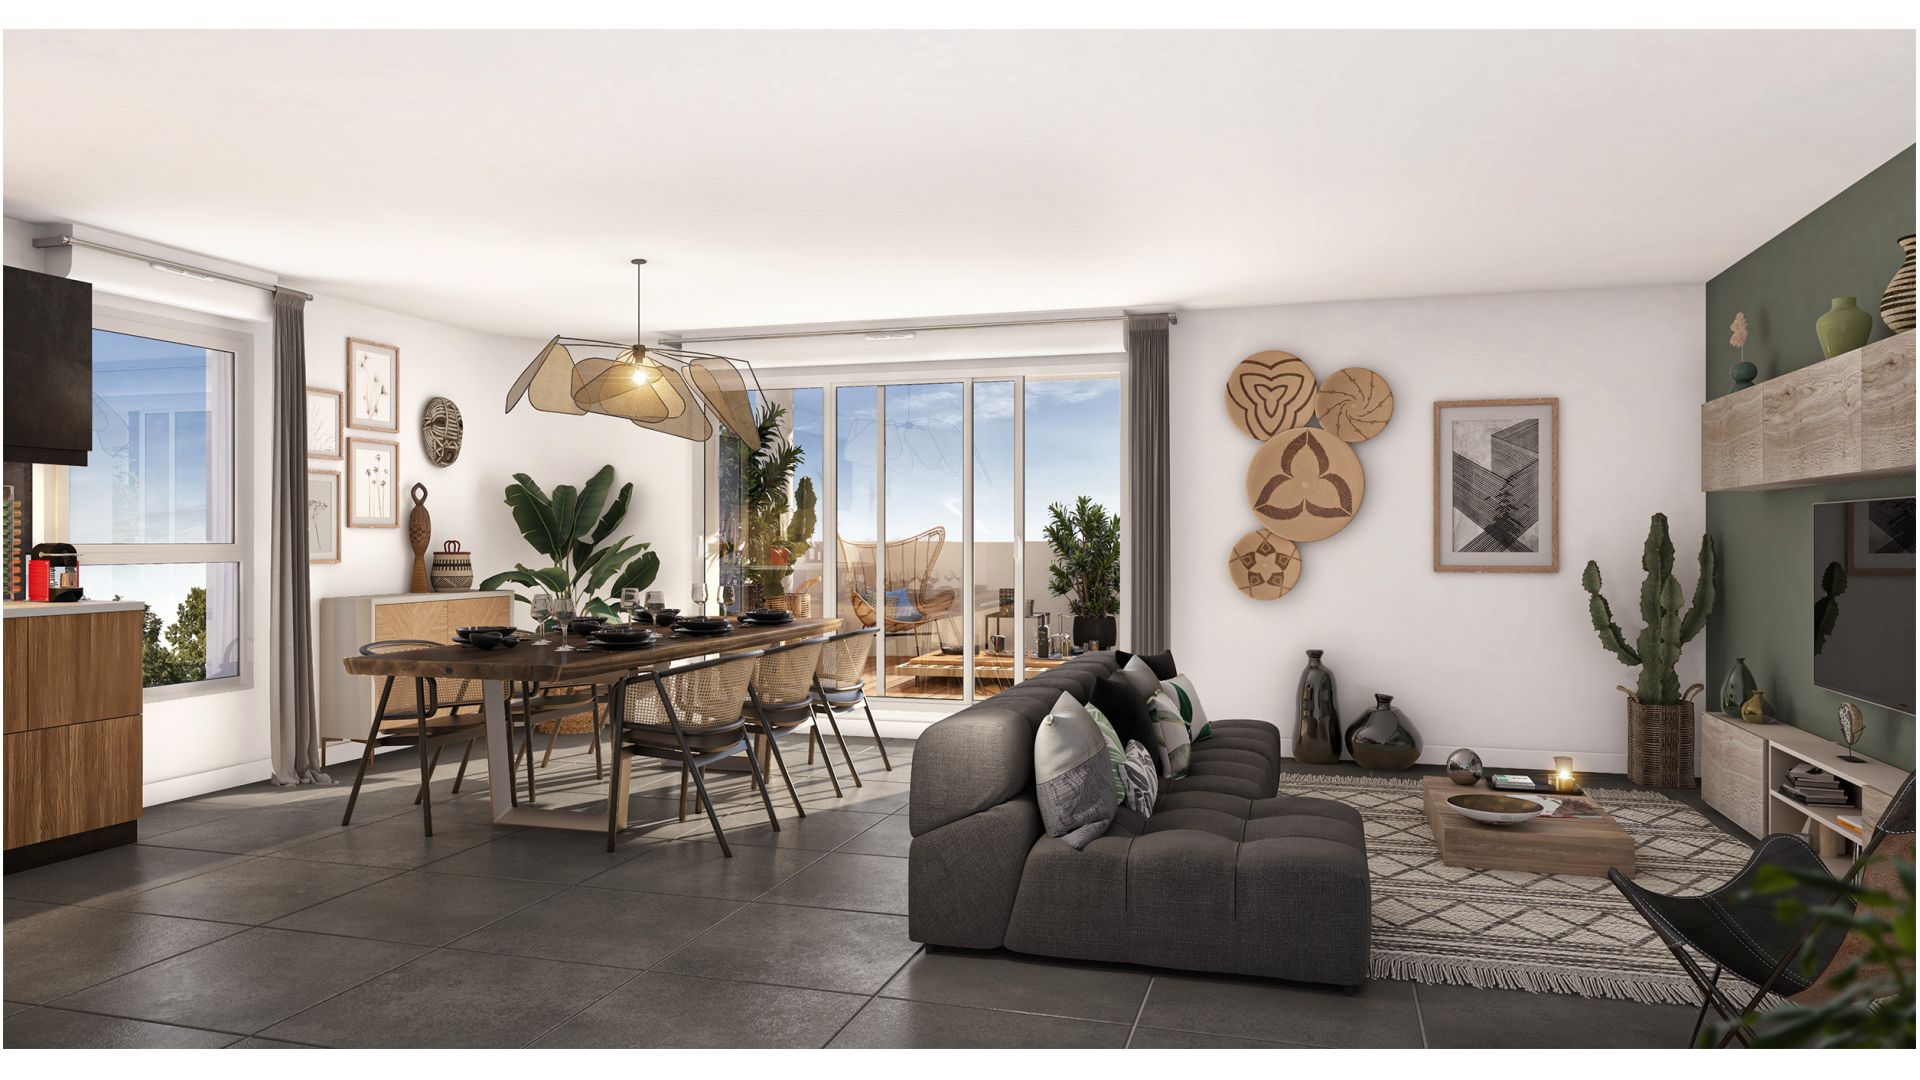 Greencity immobilier - achat appartements neufs du T2 au T5 Duplex - Résidence Home Spirit - 31400 Toulouse Montaudran  - vue intérieur